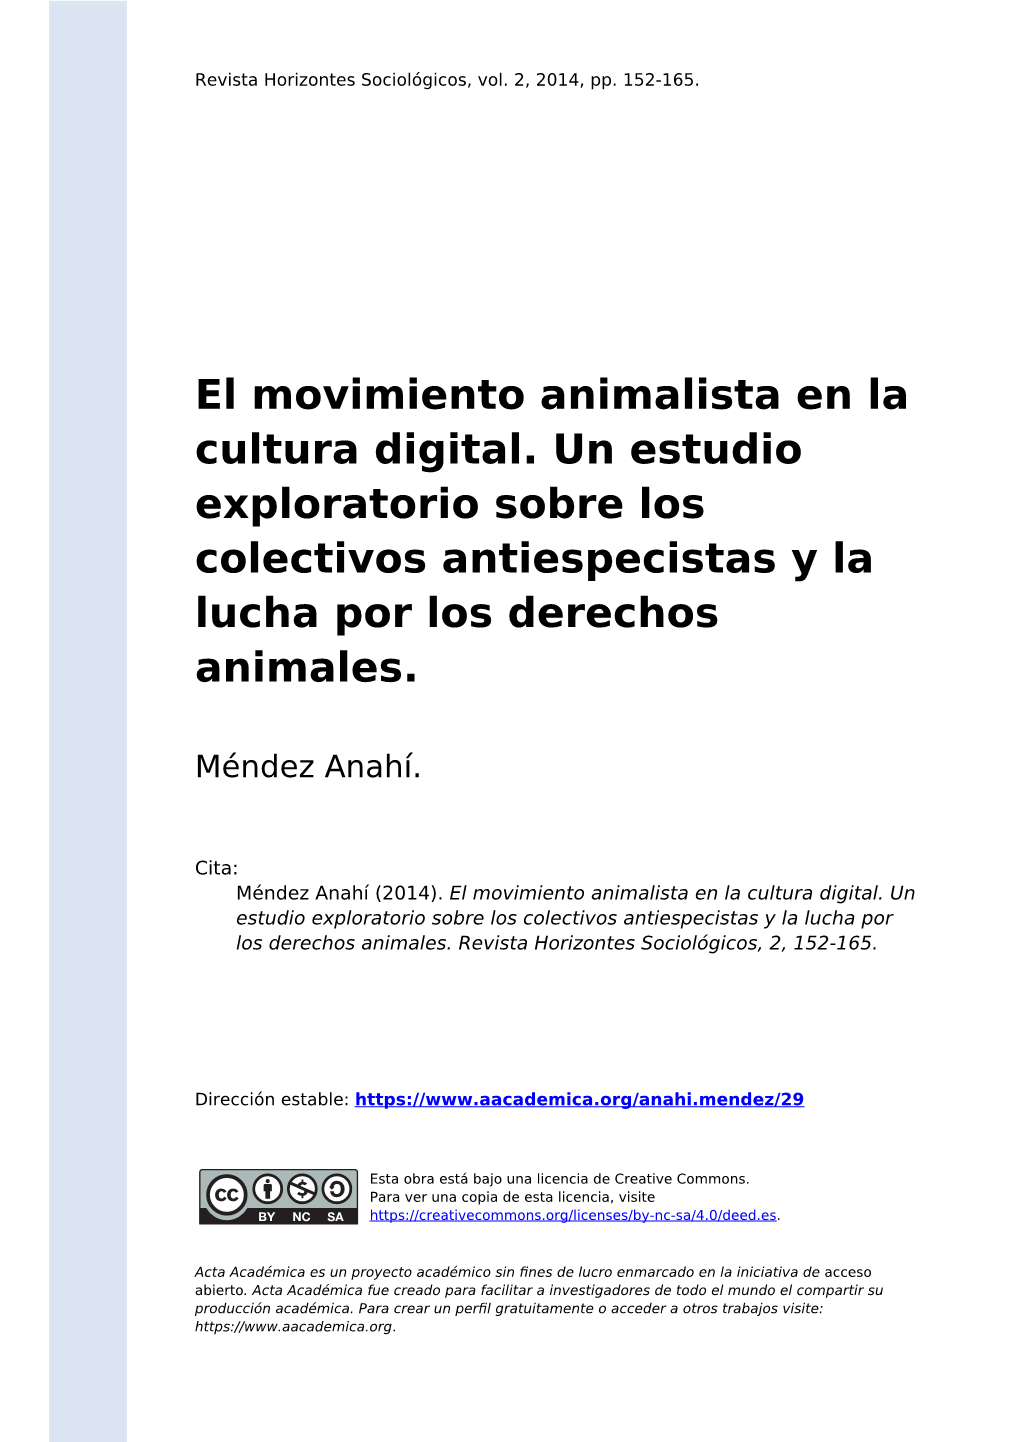 El Movimiento Animalista En La Cultura Digital. Un Estudio Exploratorio Sobre Los Colectivos Antiespecistas Y La Lucha Por Los Derechos Animales